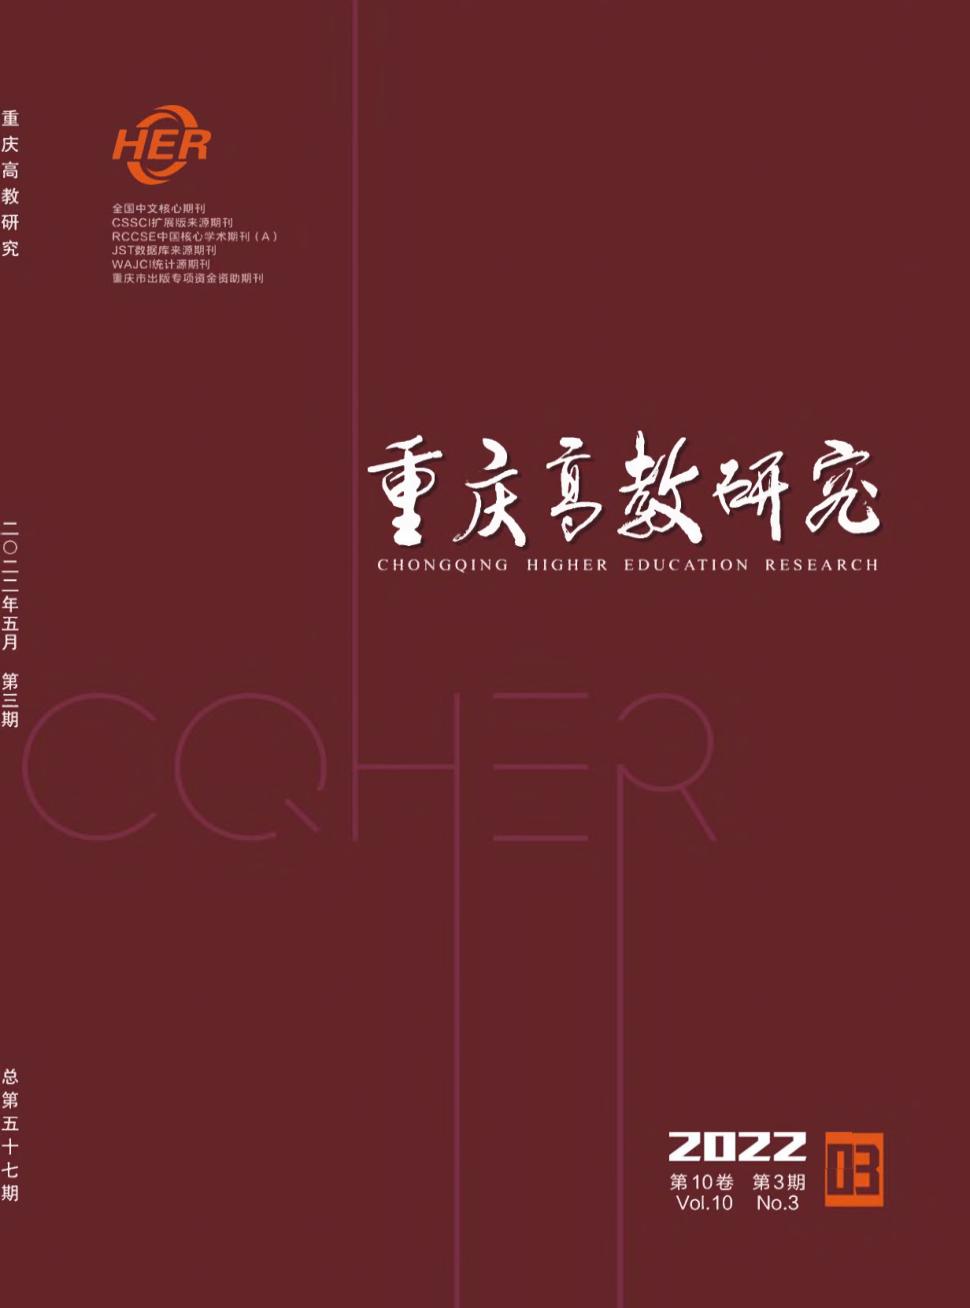 重庆高教研究杂志